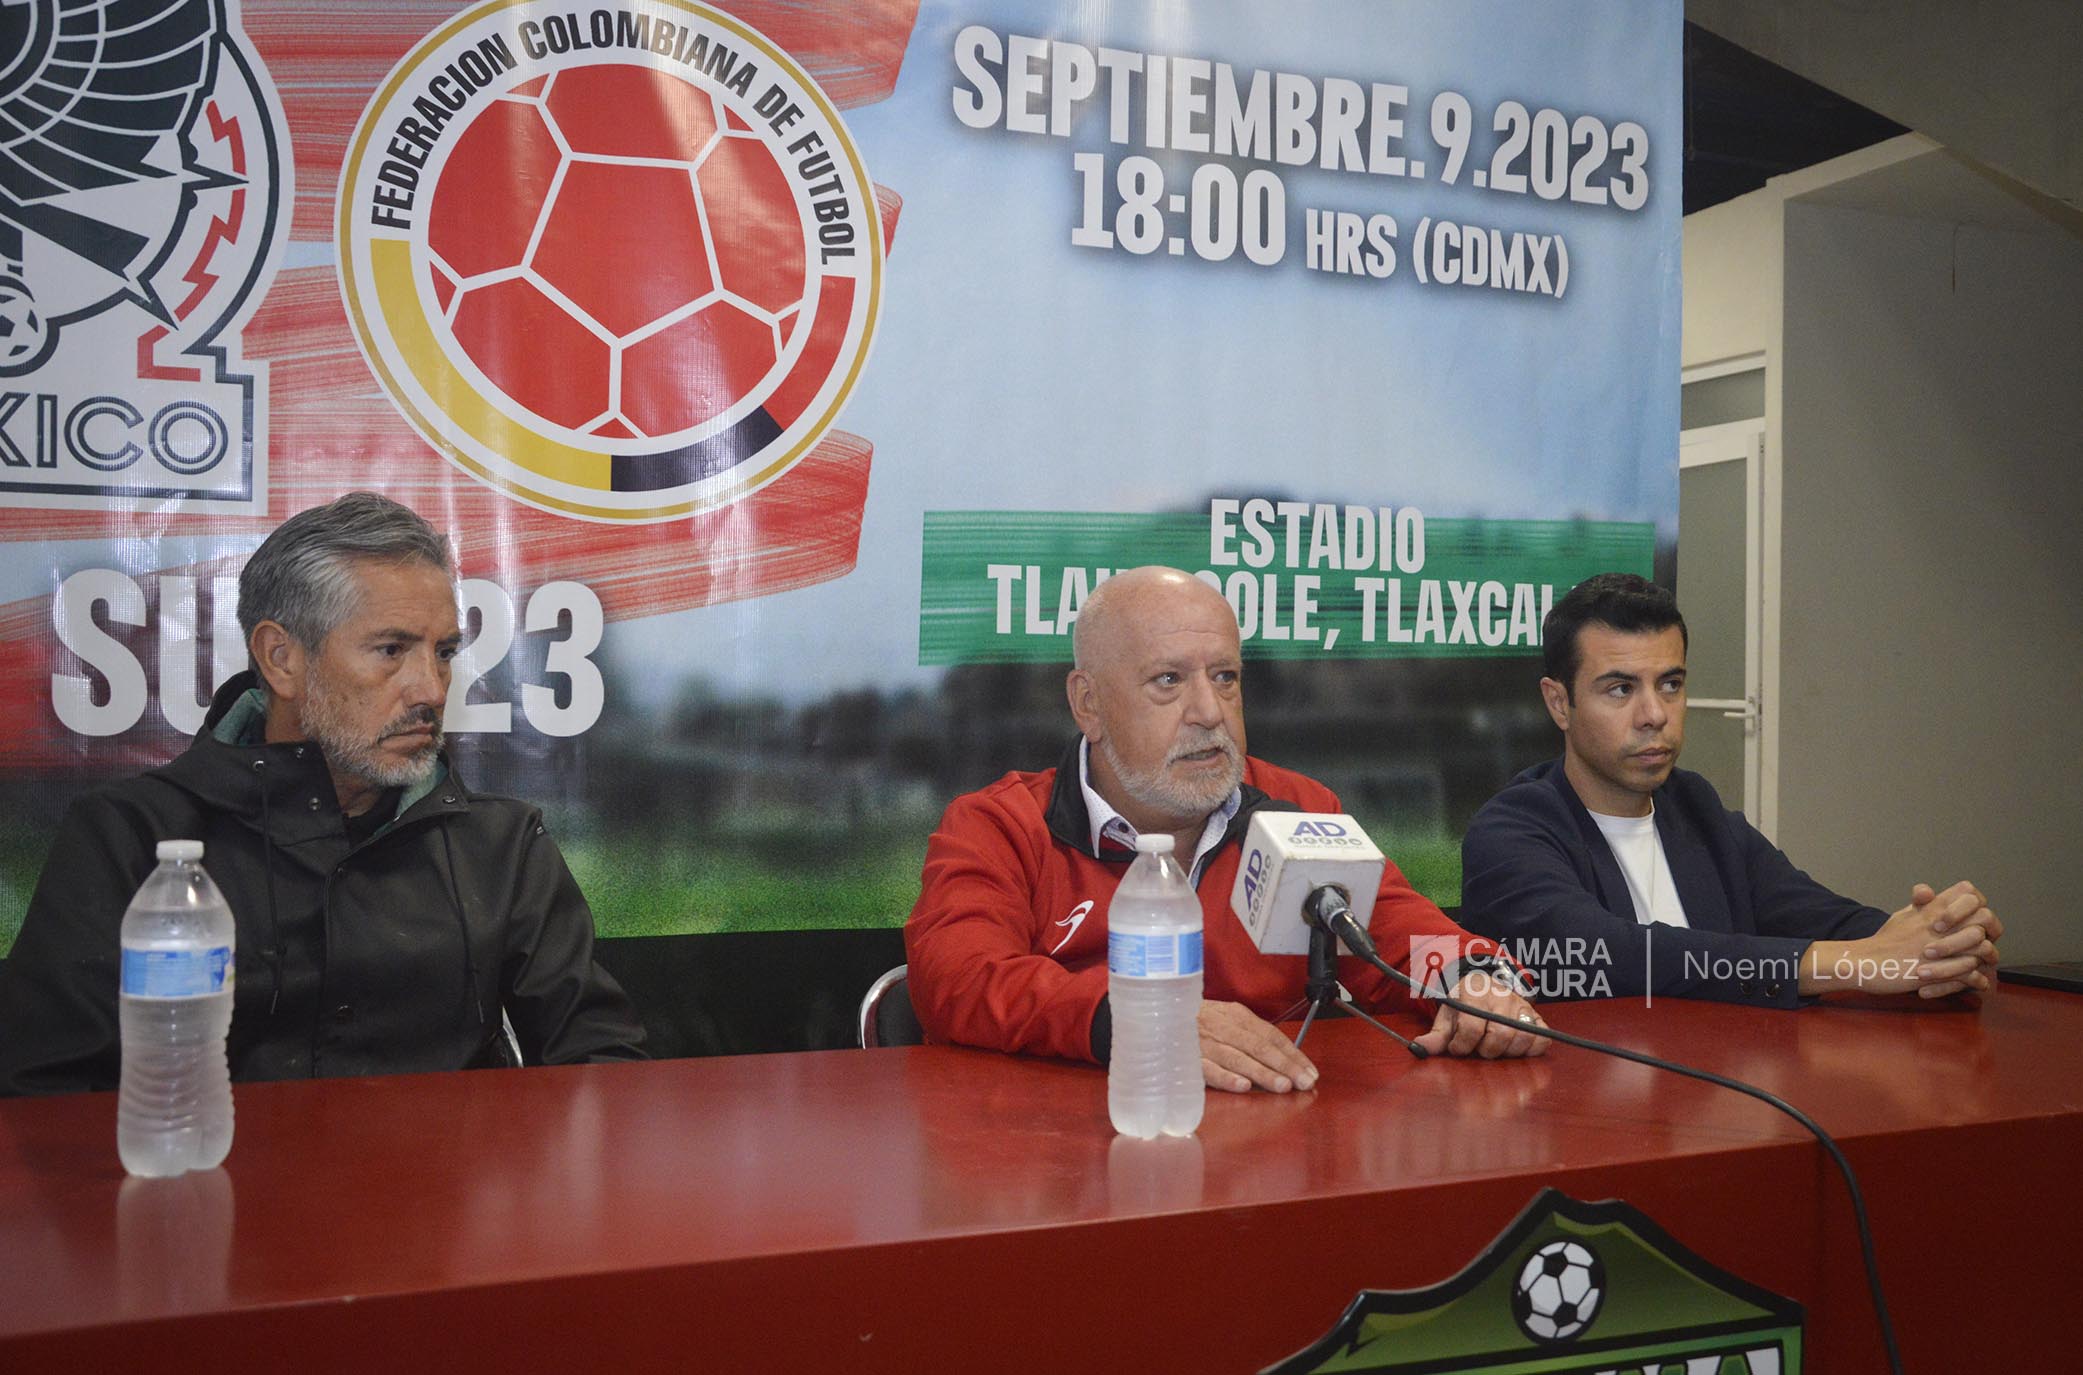 Anuncian partido México vs Colombia sub-23 en Tlaxcala